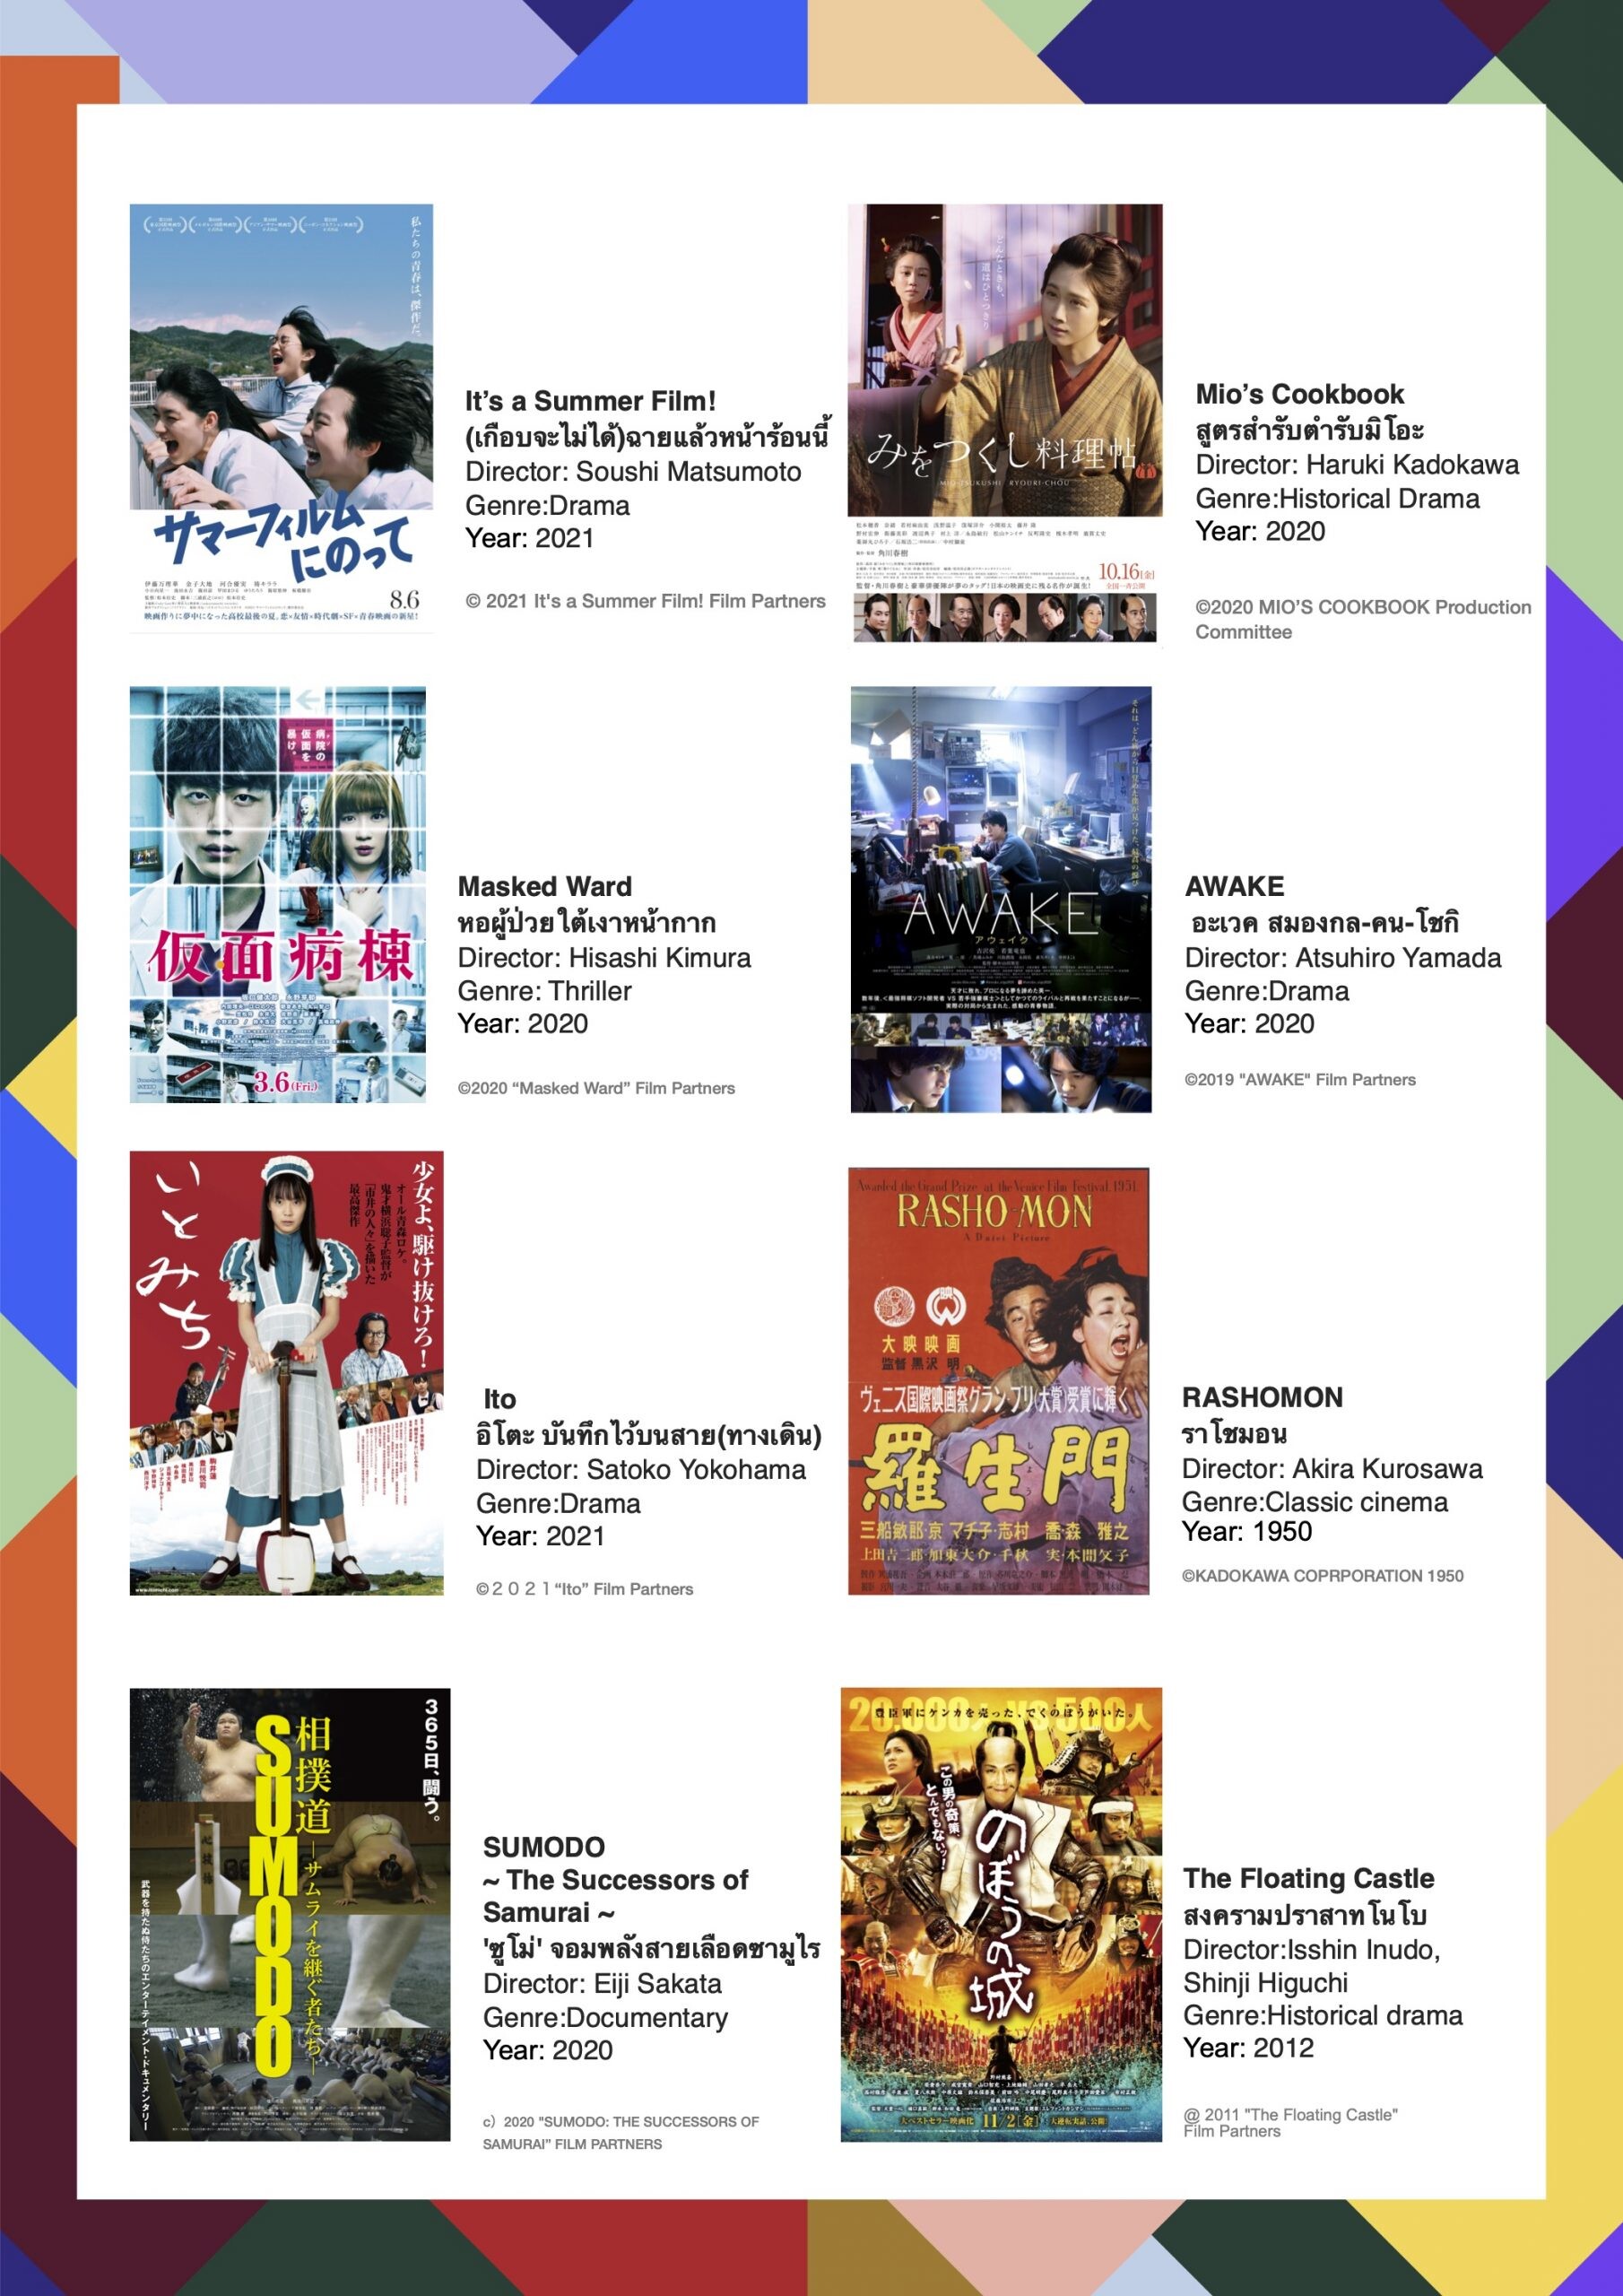 เทศกาลภาพยนตร์ญี่ปุ่นแบบออนไลน์ 2565  เผยรายชื่อภาพยนตร์ทั้งหมด 16 เรื่องให้รับชมโดยไม่เสียค่าใช้จ่าย